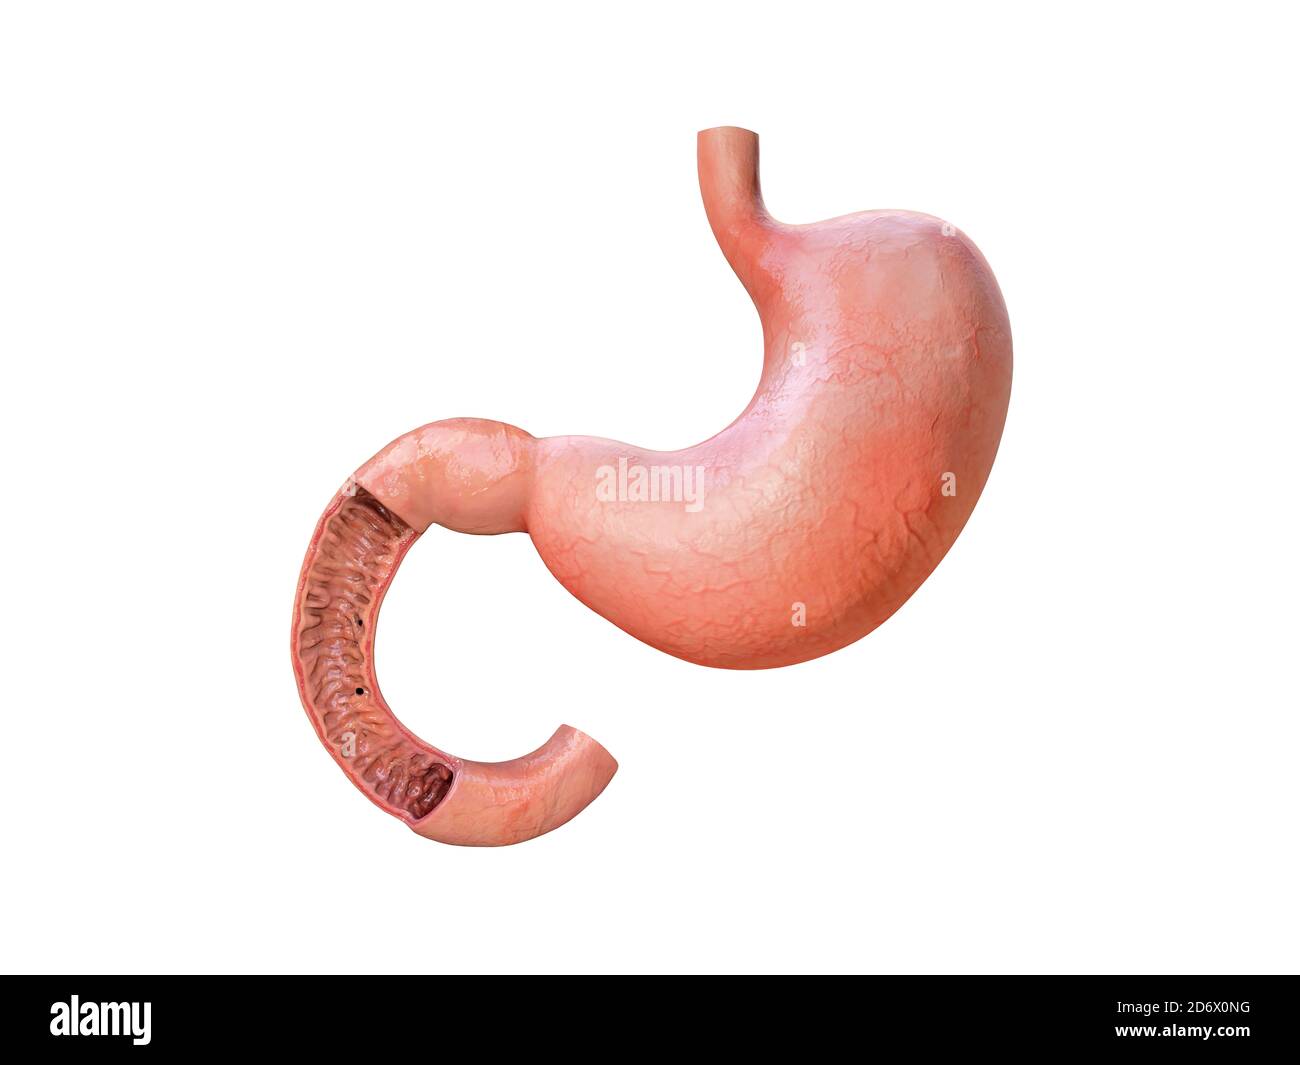 stomaco, dettagli anatomici, illustrazione di uno stomaco umano, rendering Foto Stock